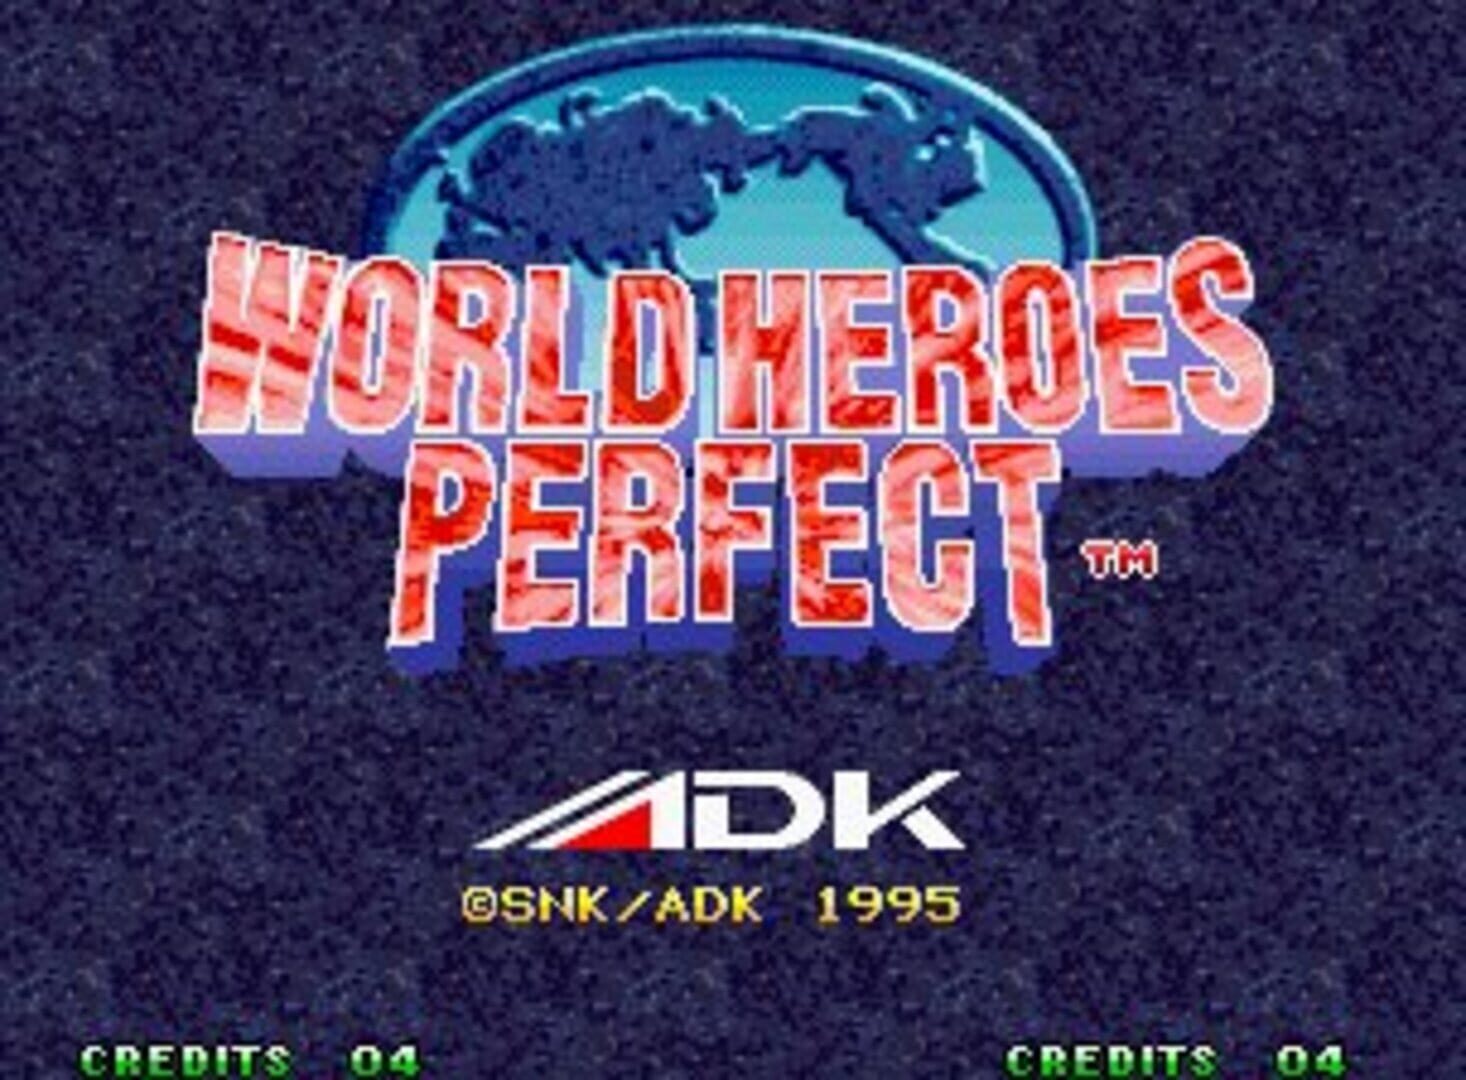 Captura de pantalla - World Heroes Perfect